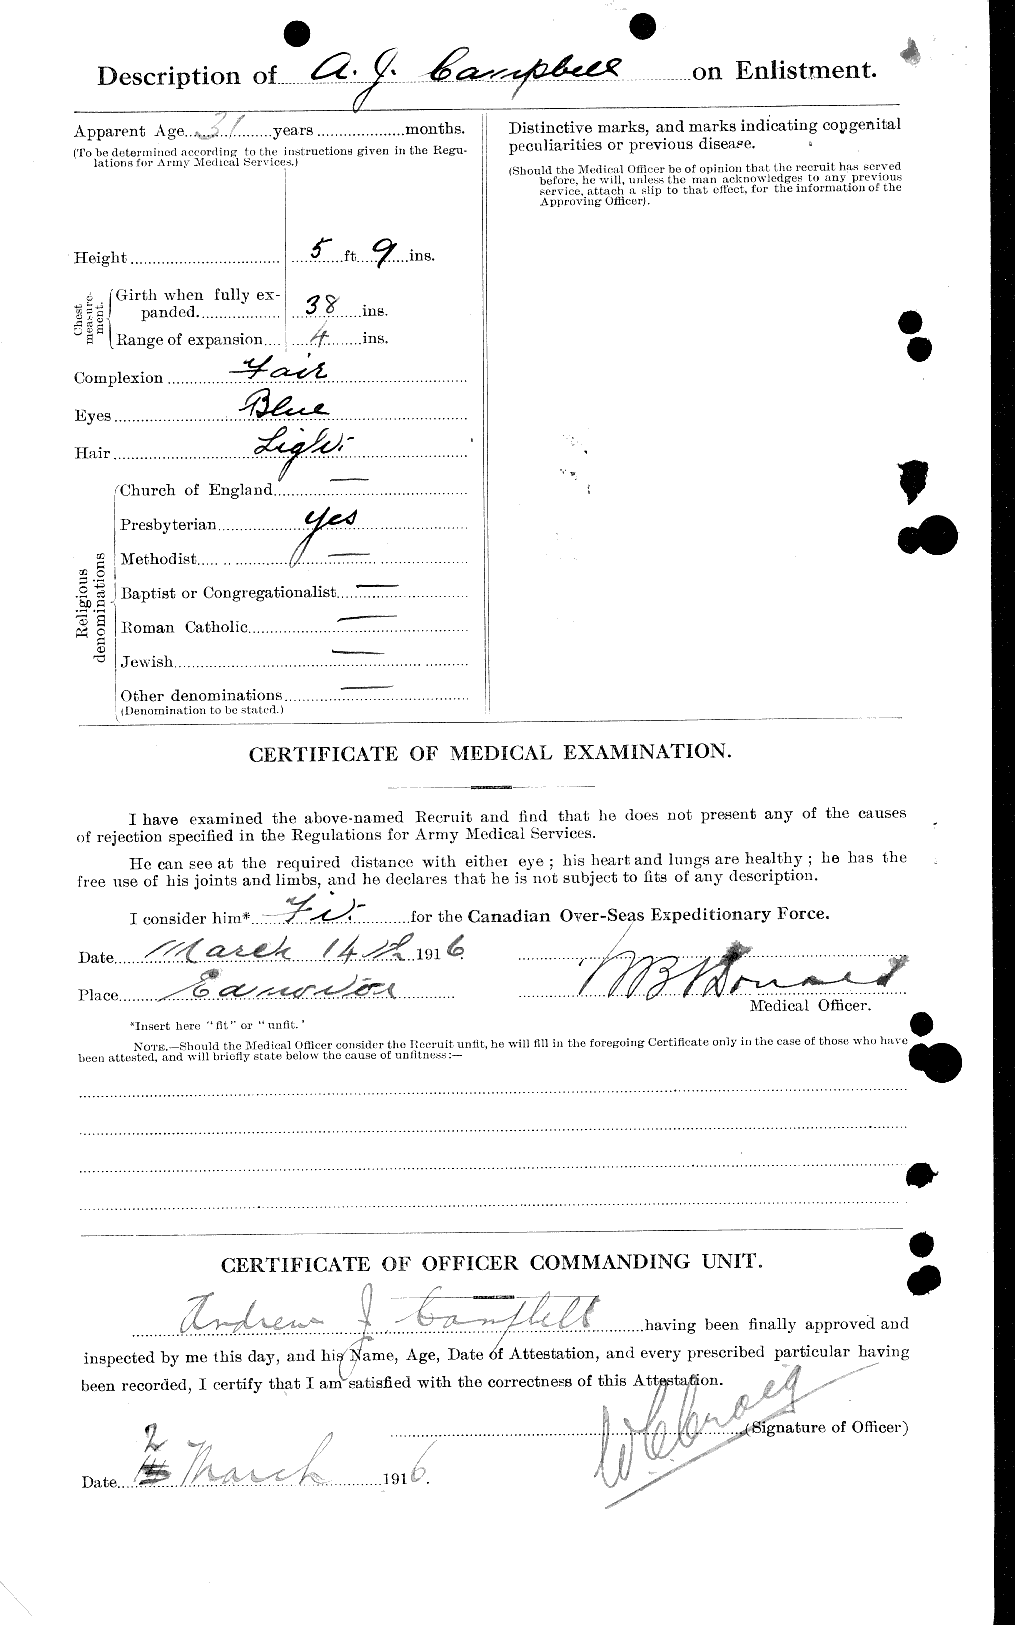 Dossiers du Personnel de la Première Guerre mondiale - CEC 006606b